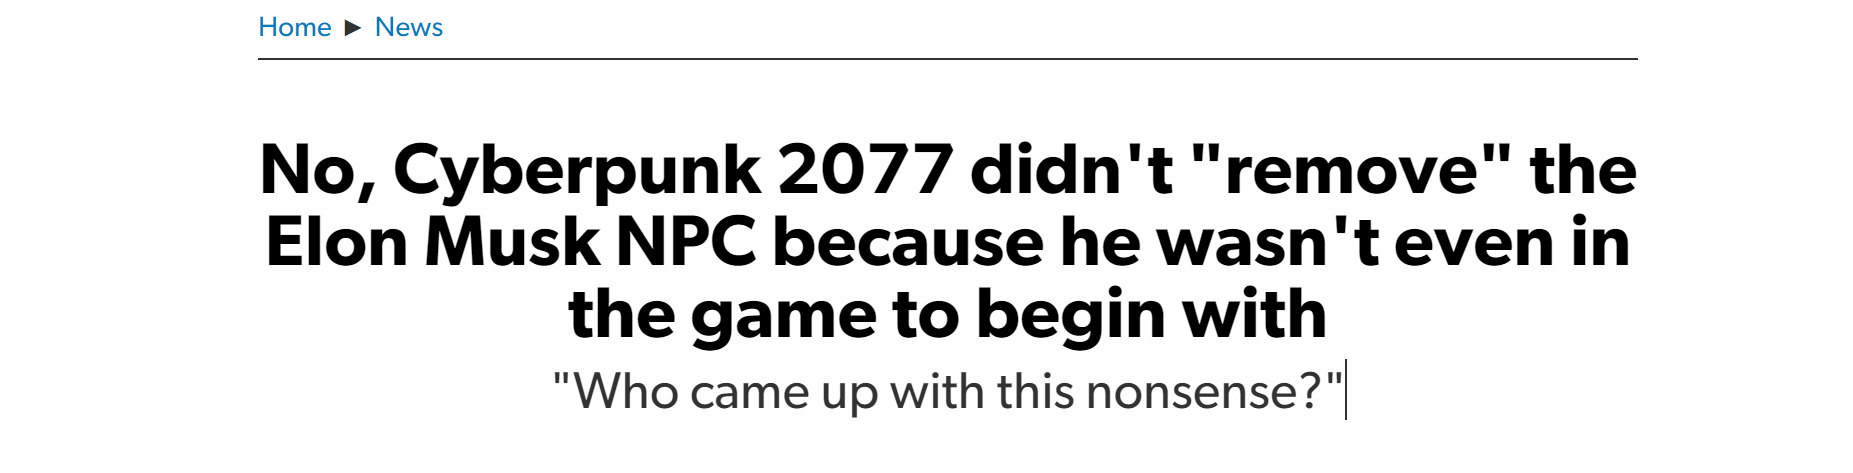 玩家發現《電馭叛客2077》NPC疑似馬斯克 製作人否認